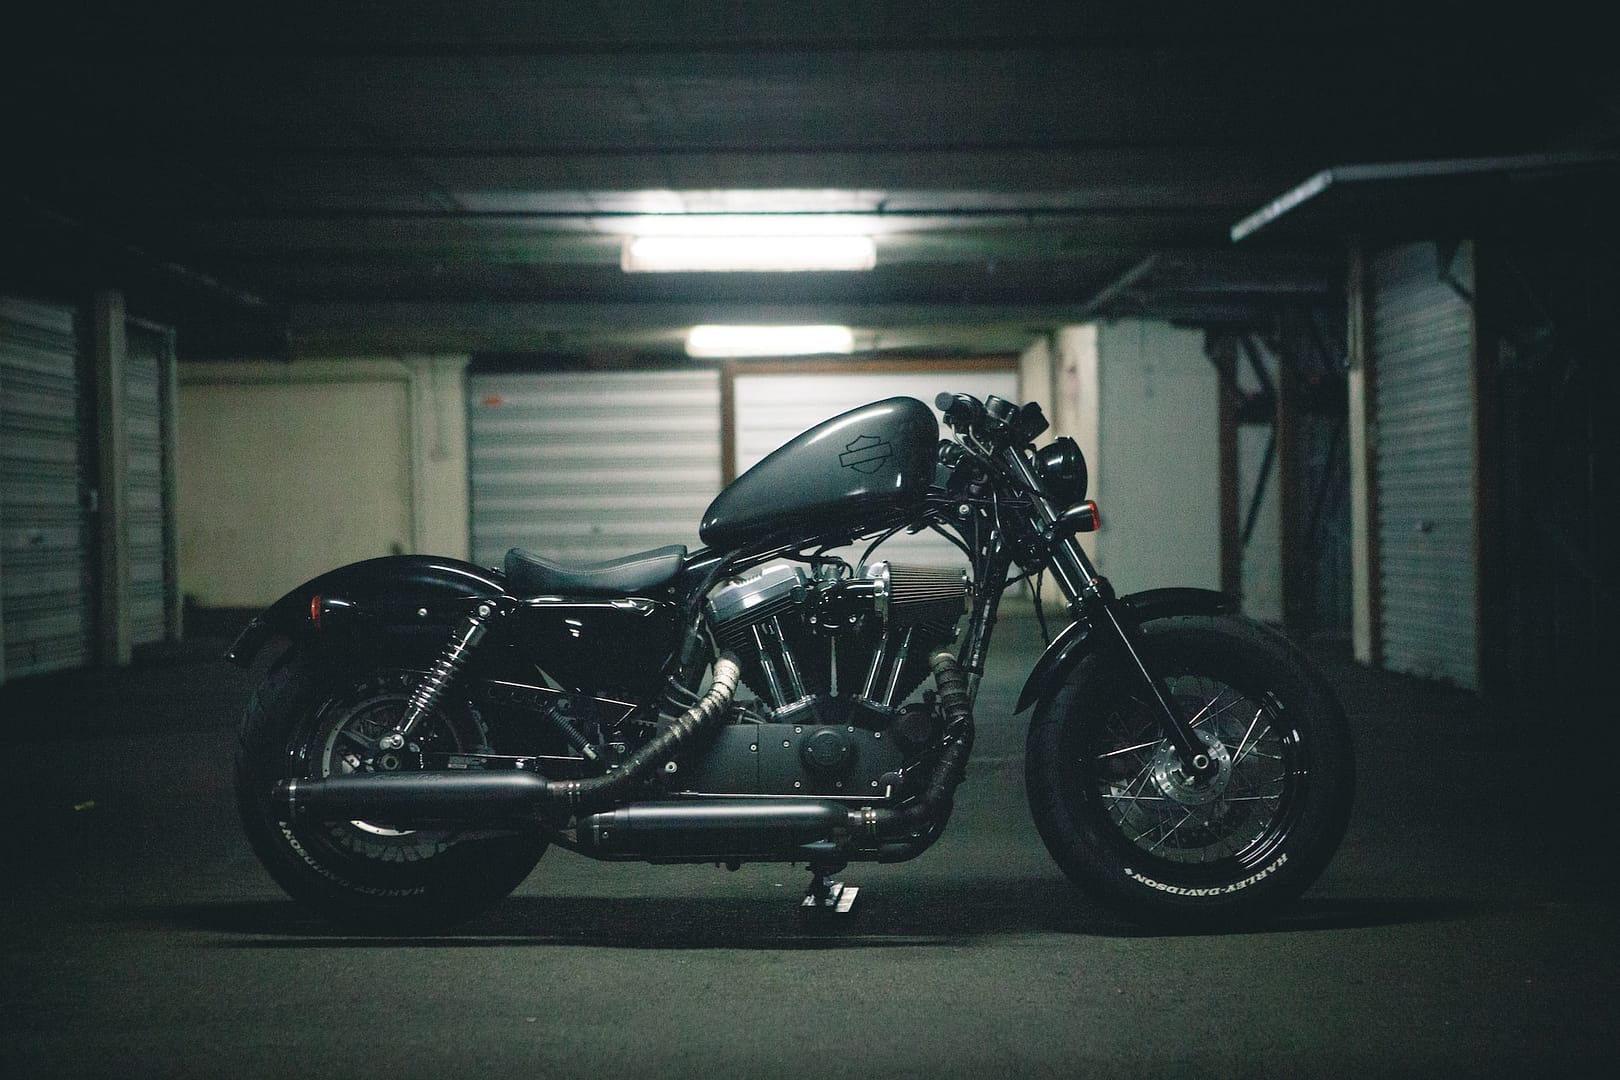 A motorbike parked in a garage